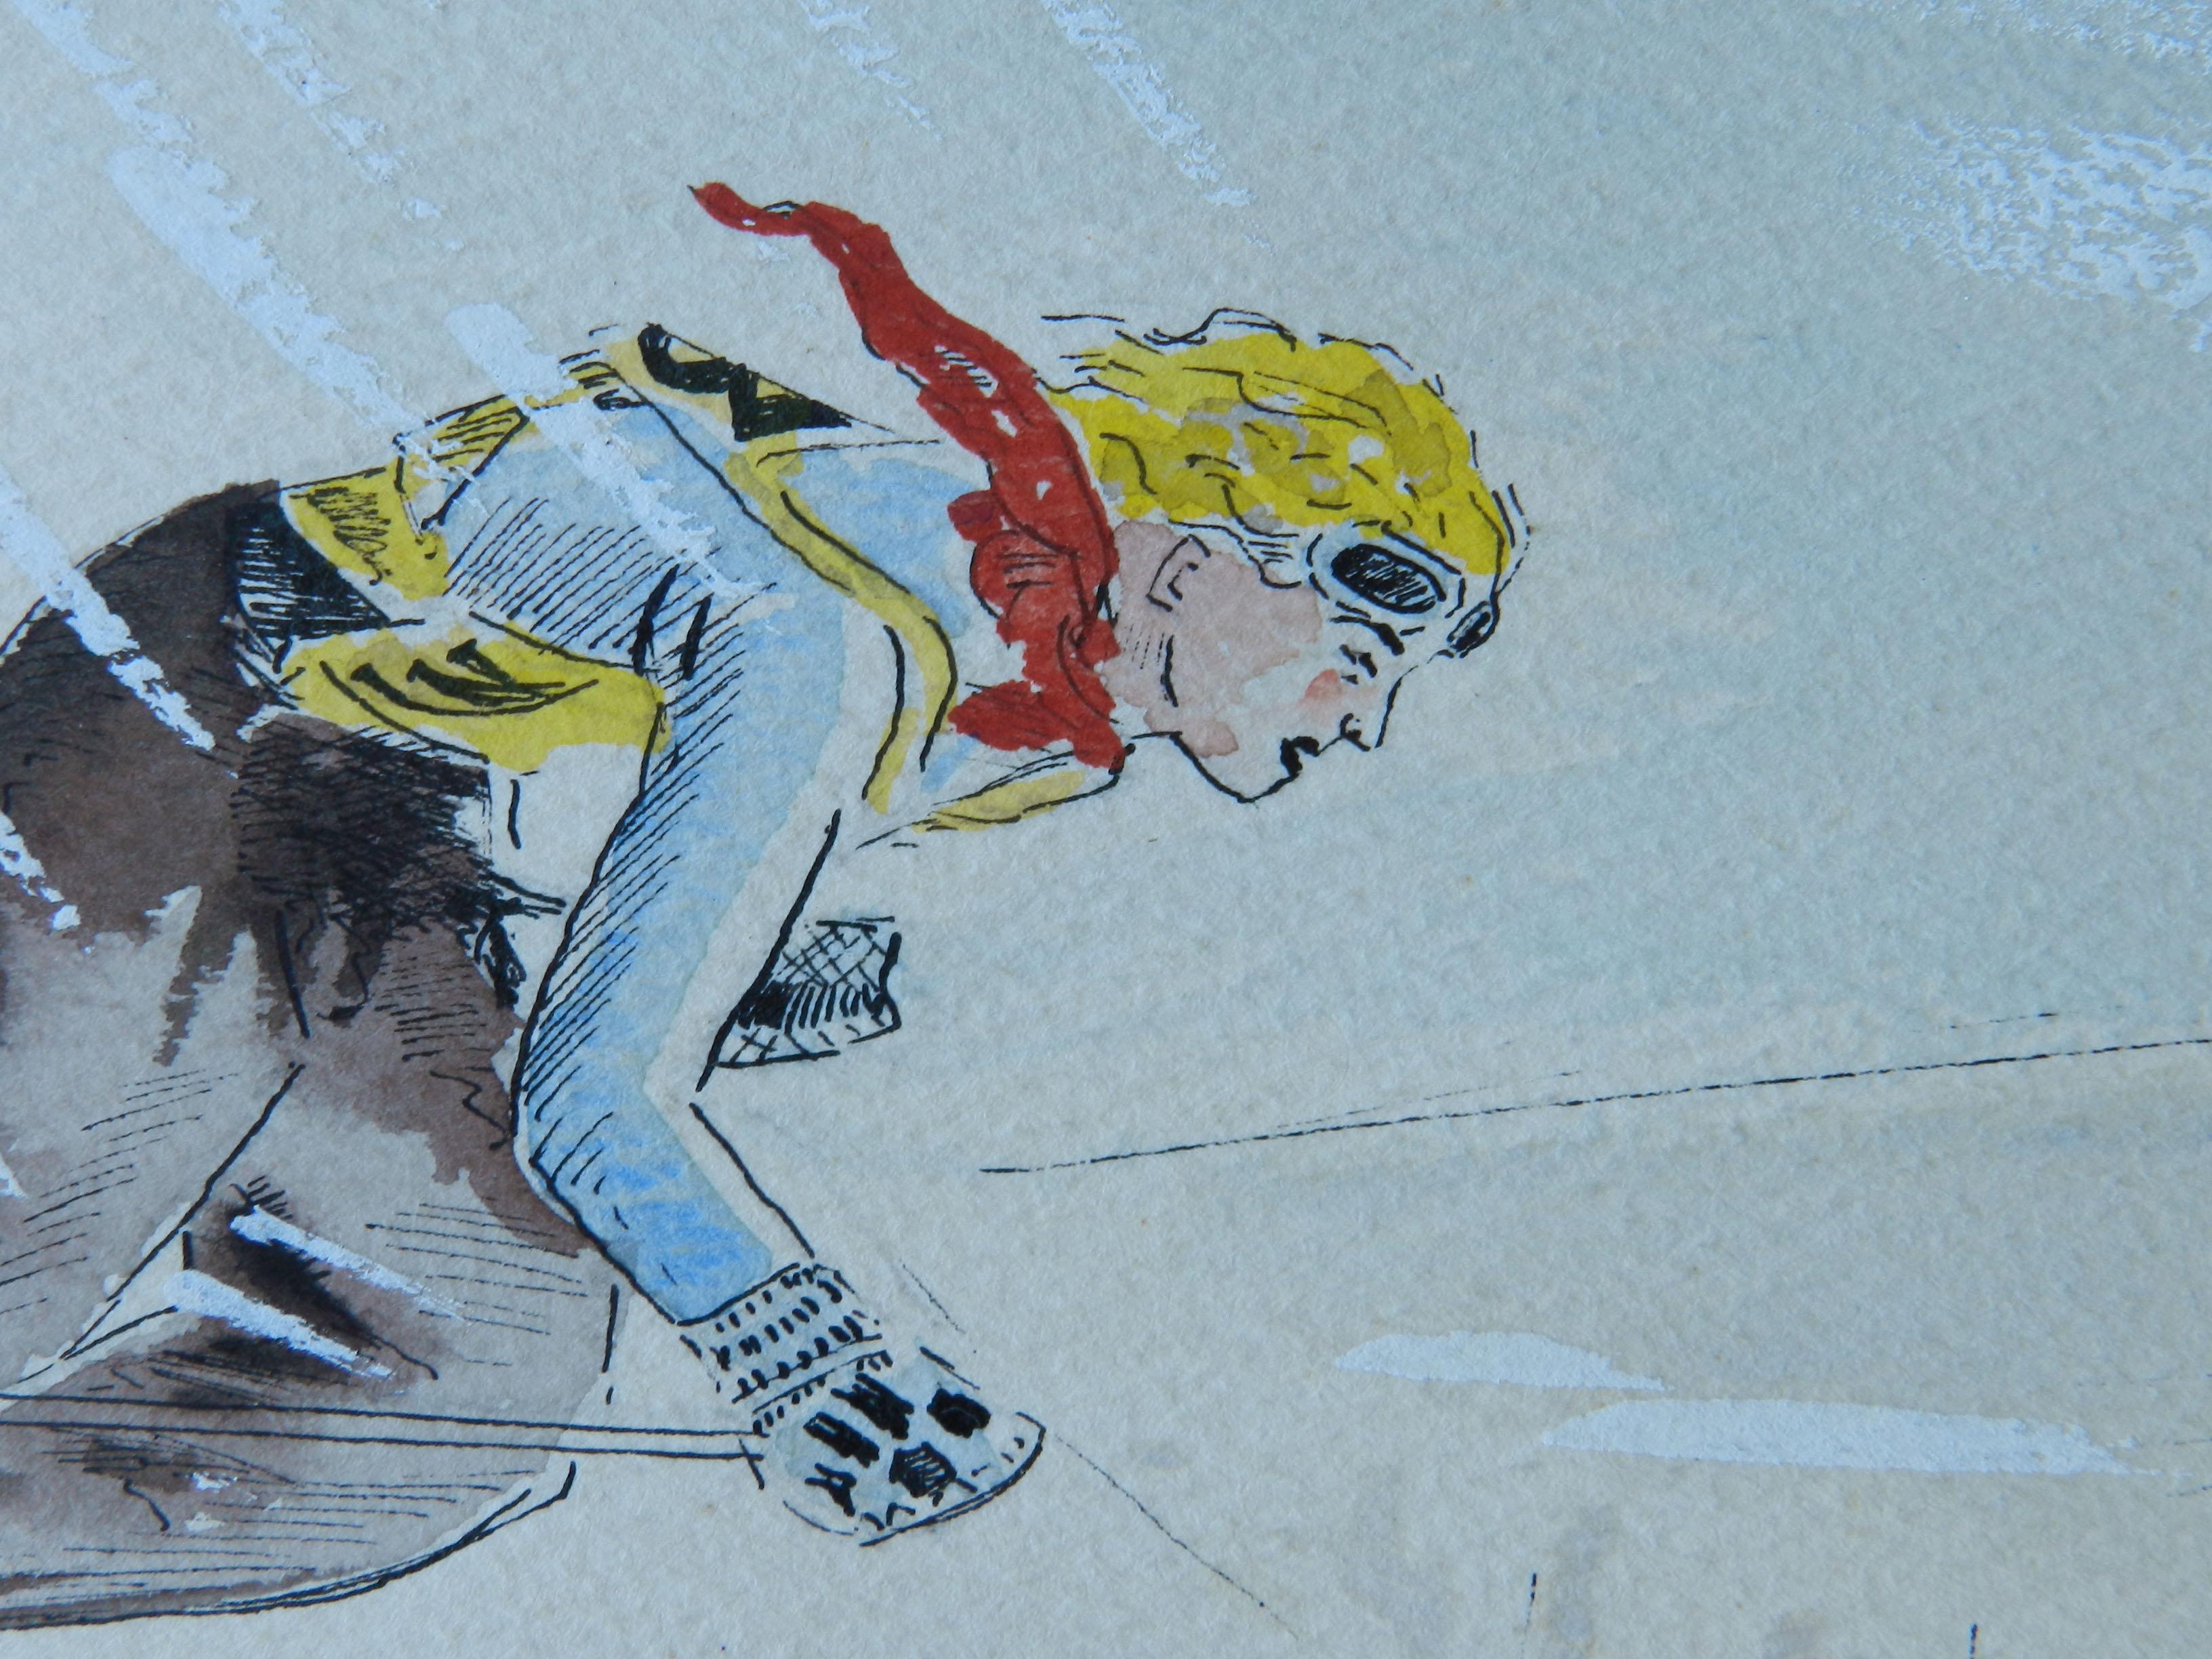 Skieur Aquarelle originale signée par l'artiste Milieu du siècle c1952
Signé par l'artiste Robin Way
Cadre inclus (pas de verre pour l'expédition)
Bon état vintage

